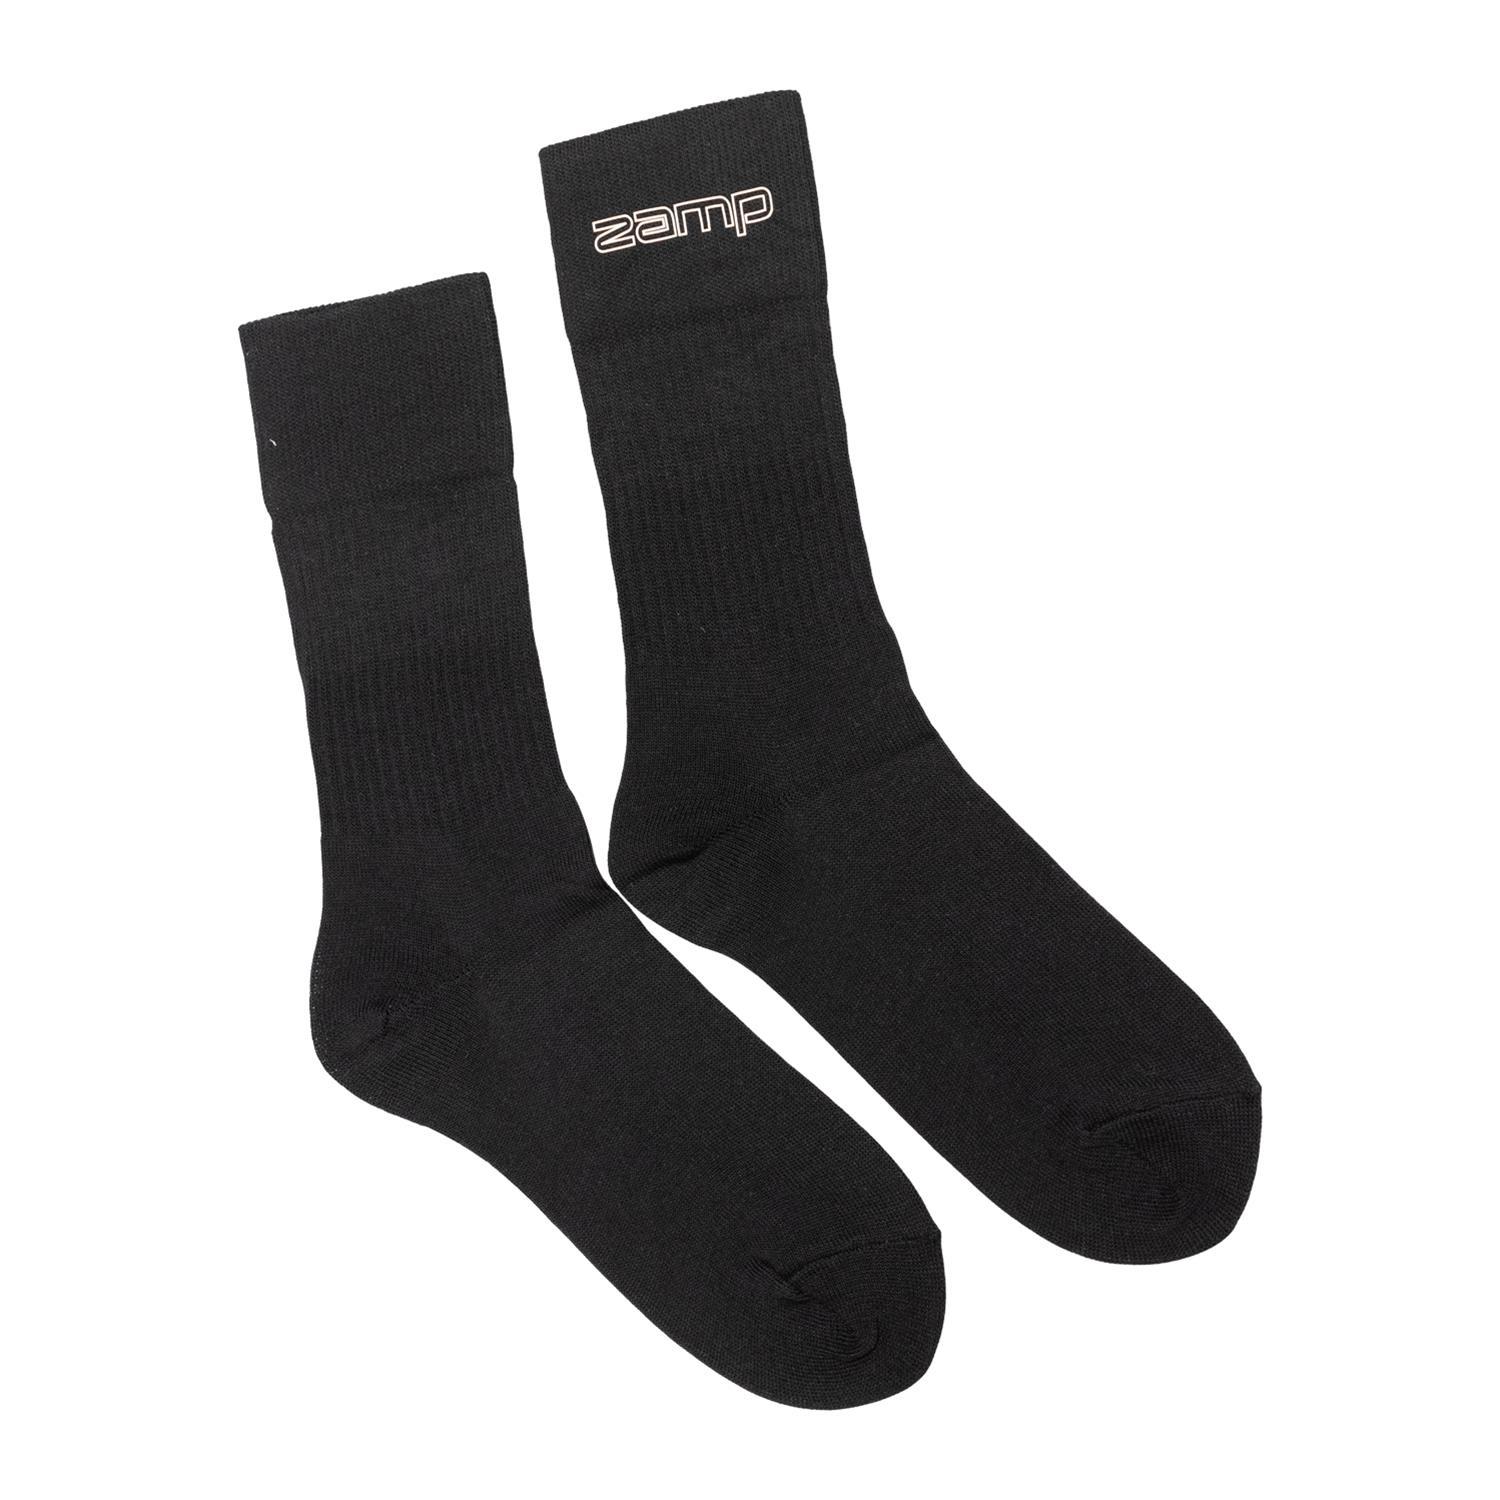 Socks Black Small SFI 3.3 - RU003003S